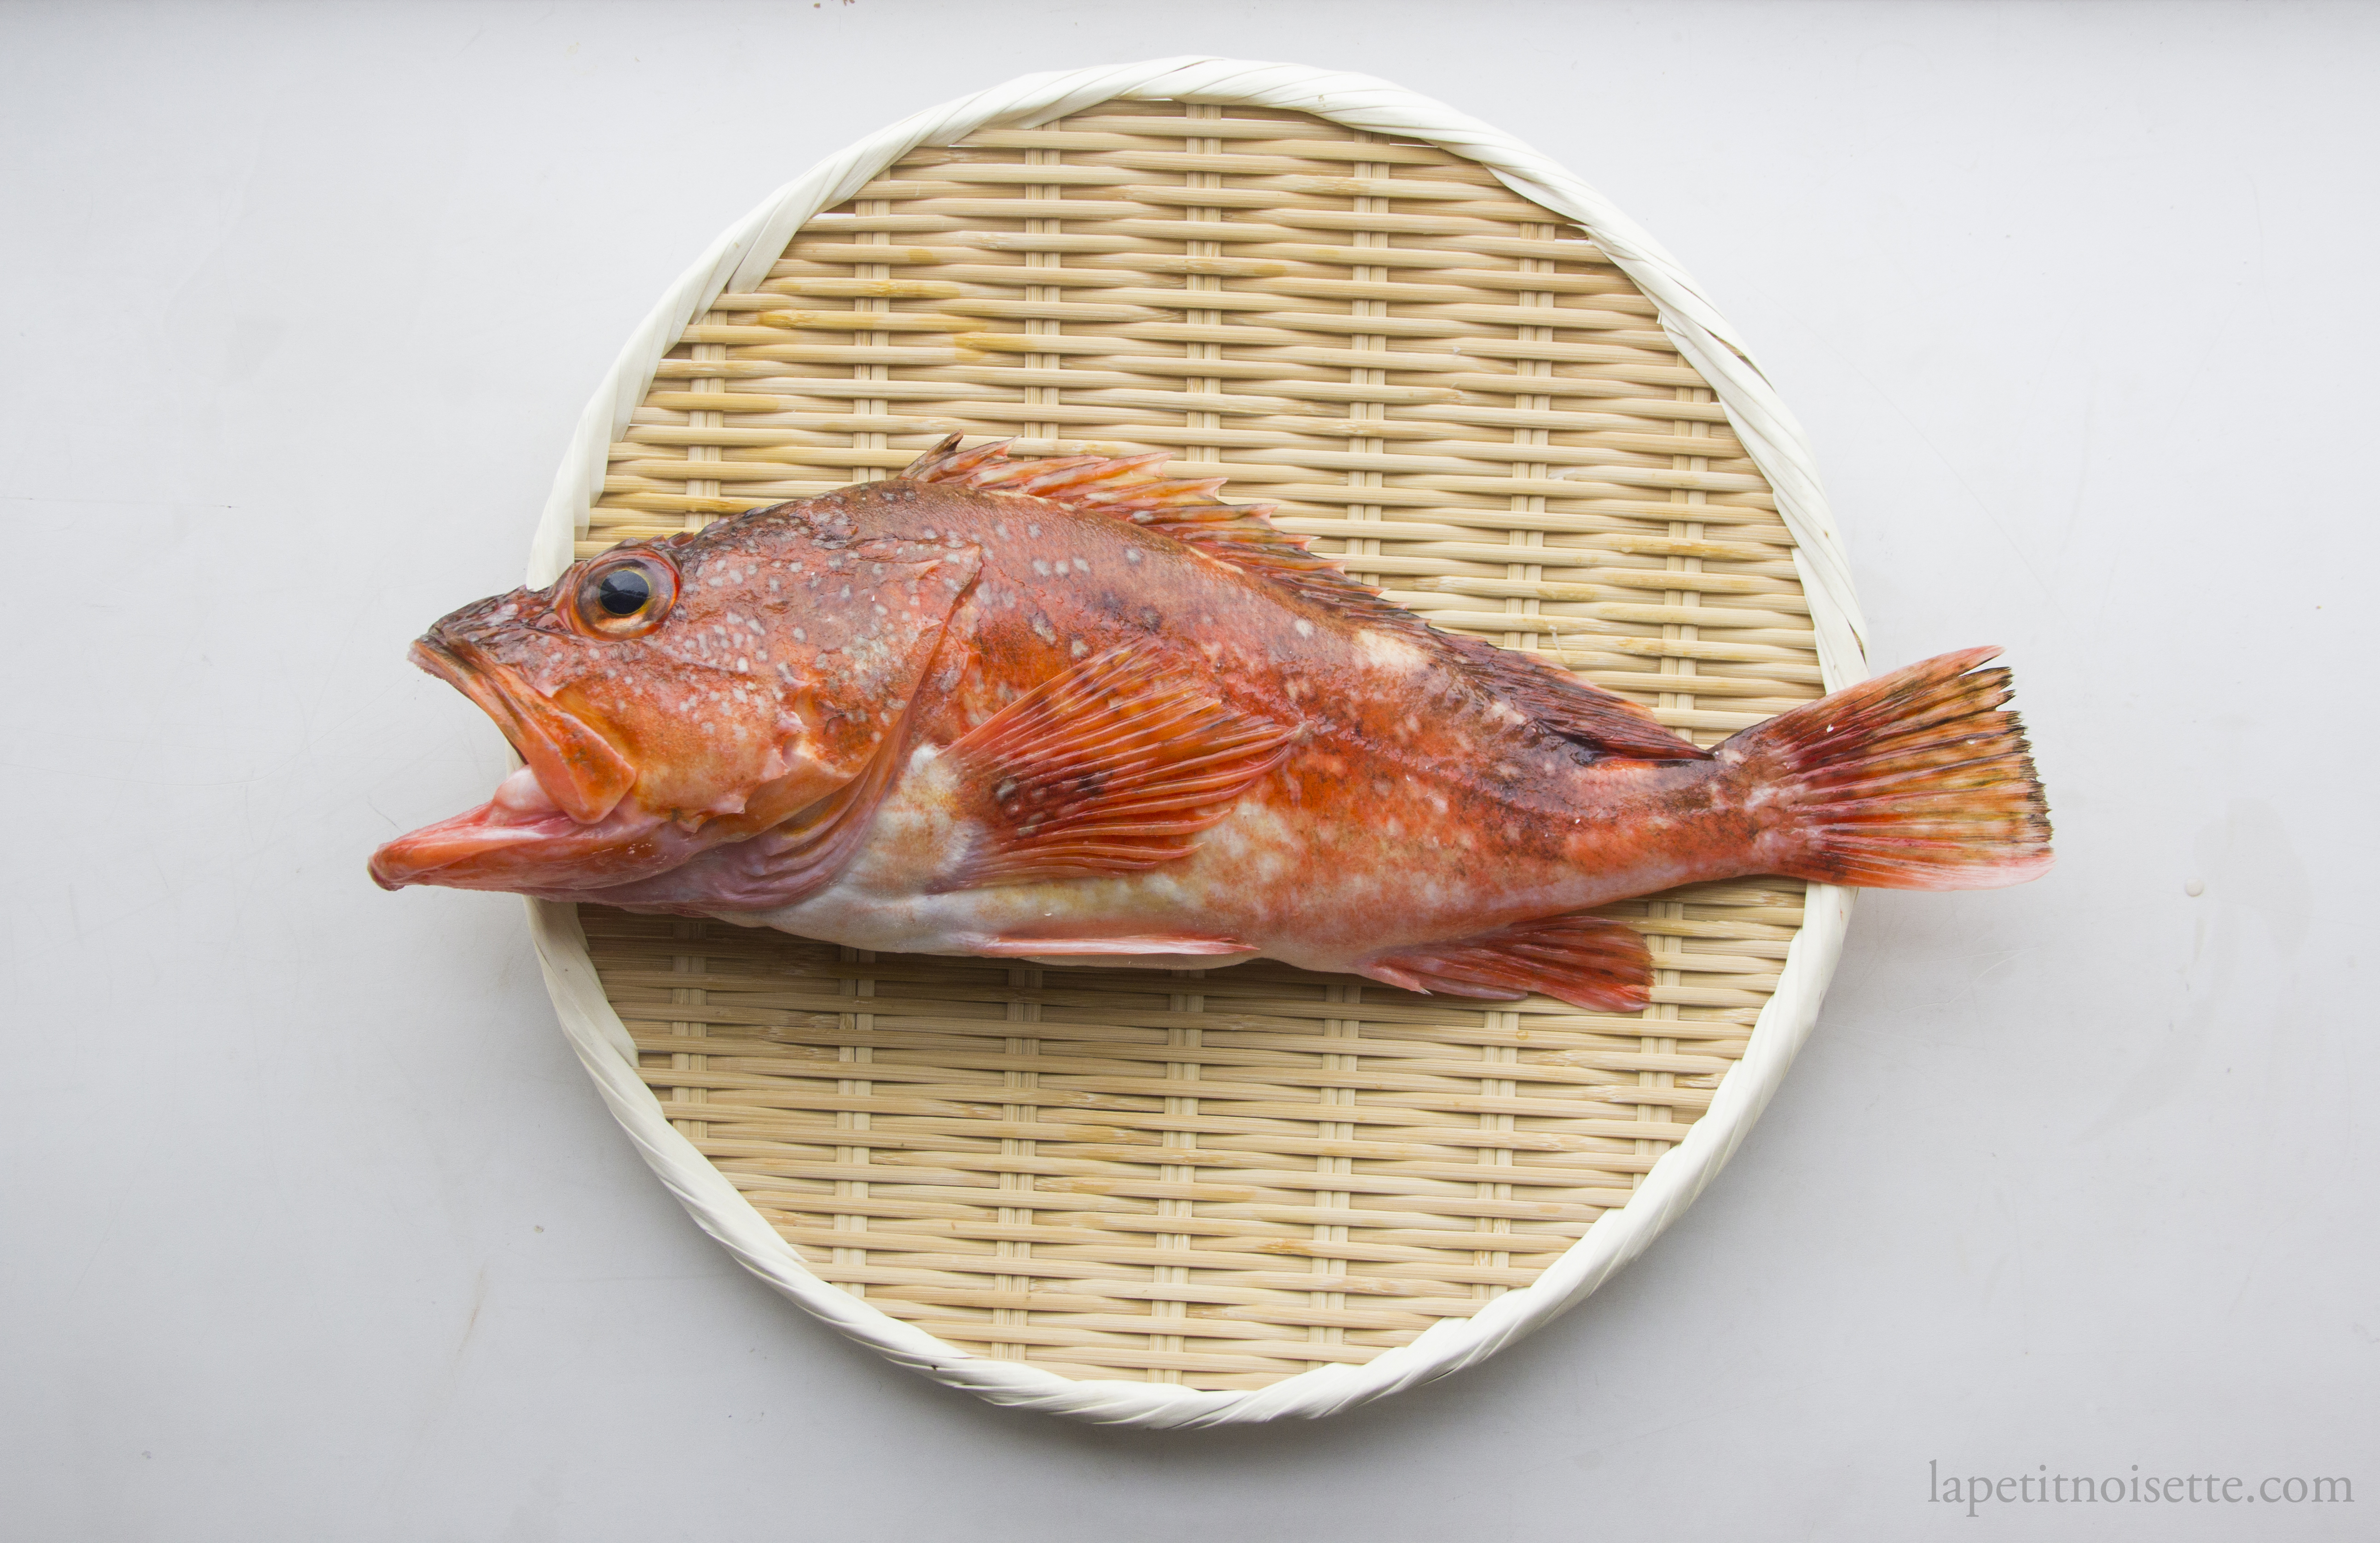 Japanese kasago fish